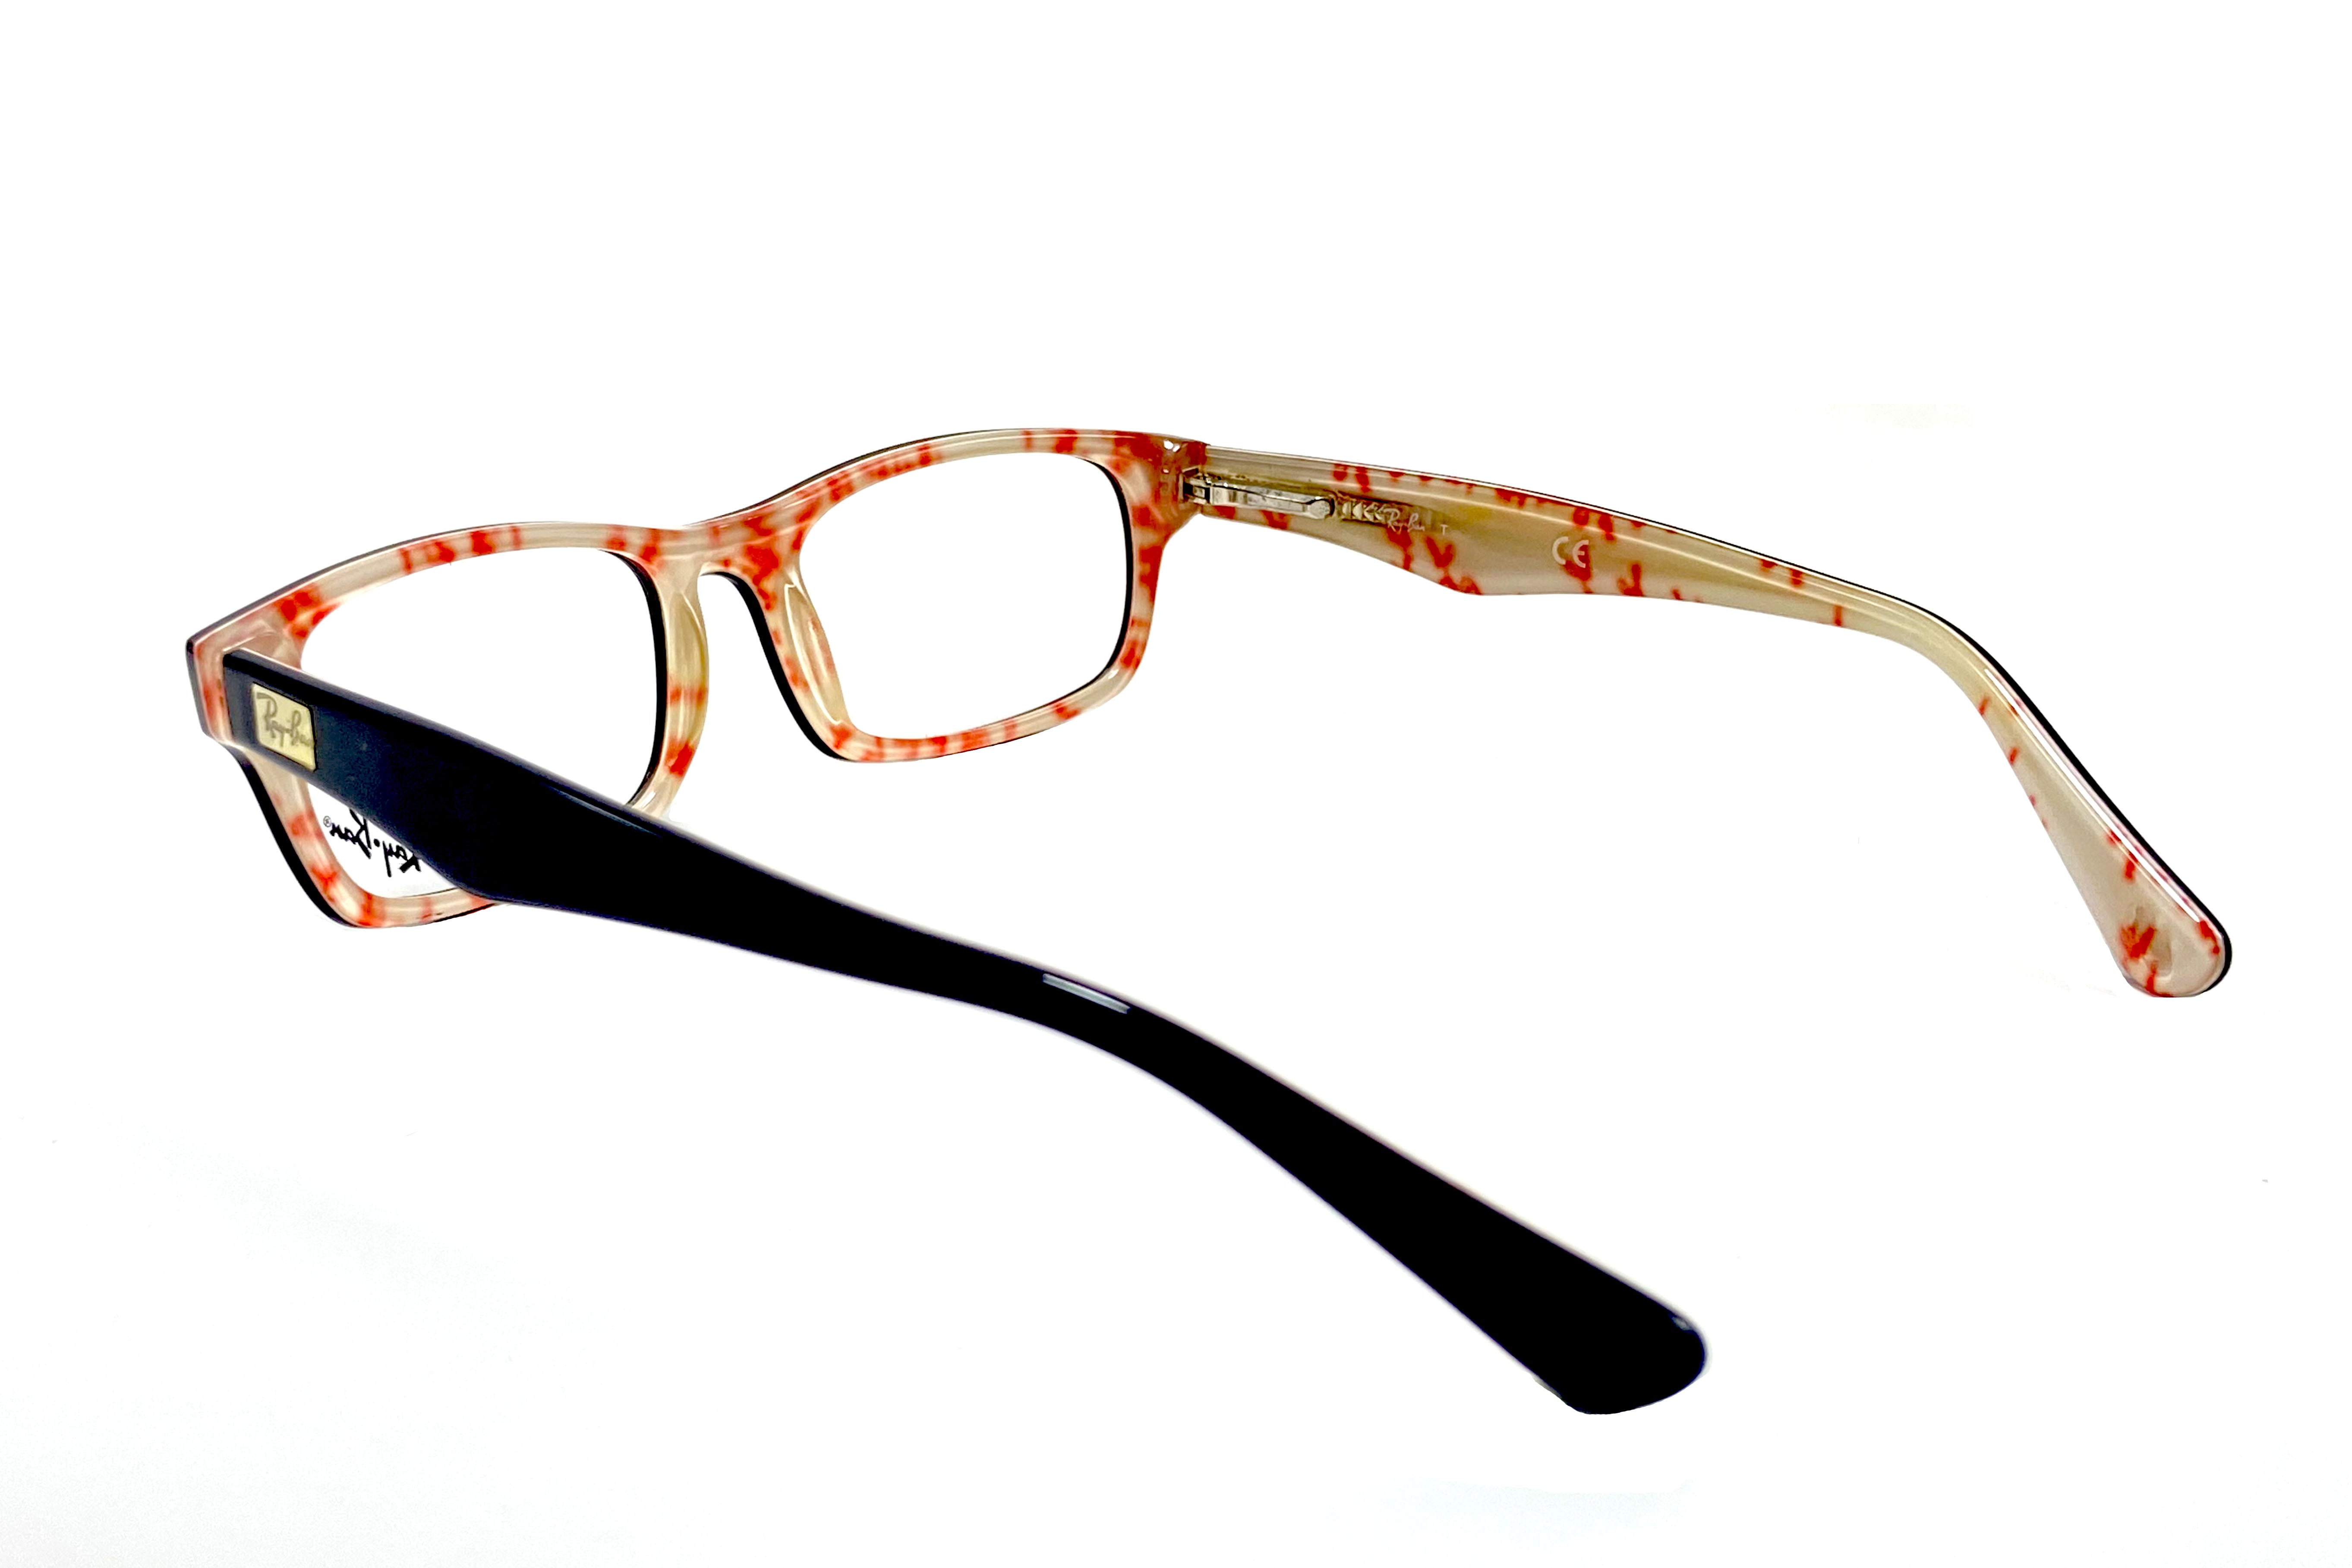 NS Deluxe - 5206 - Black Tortoise - Eyeglasses